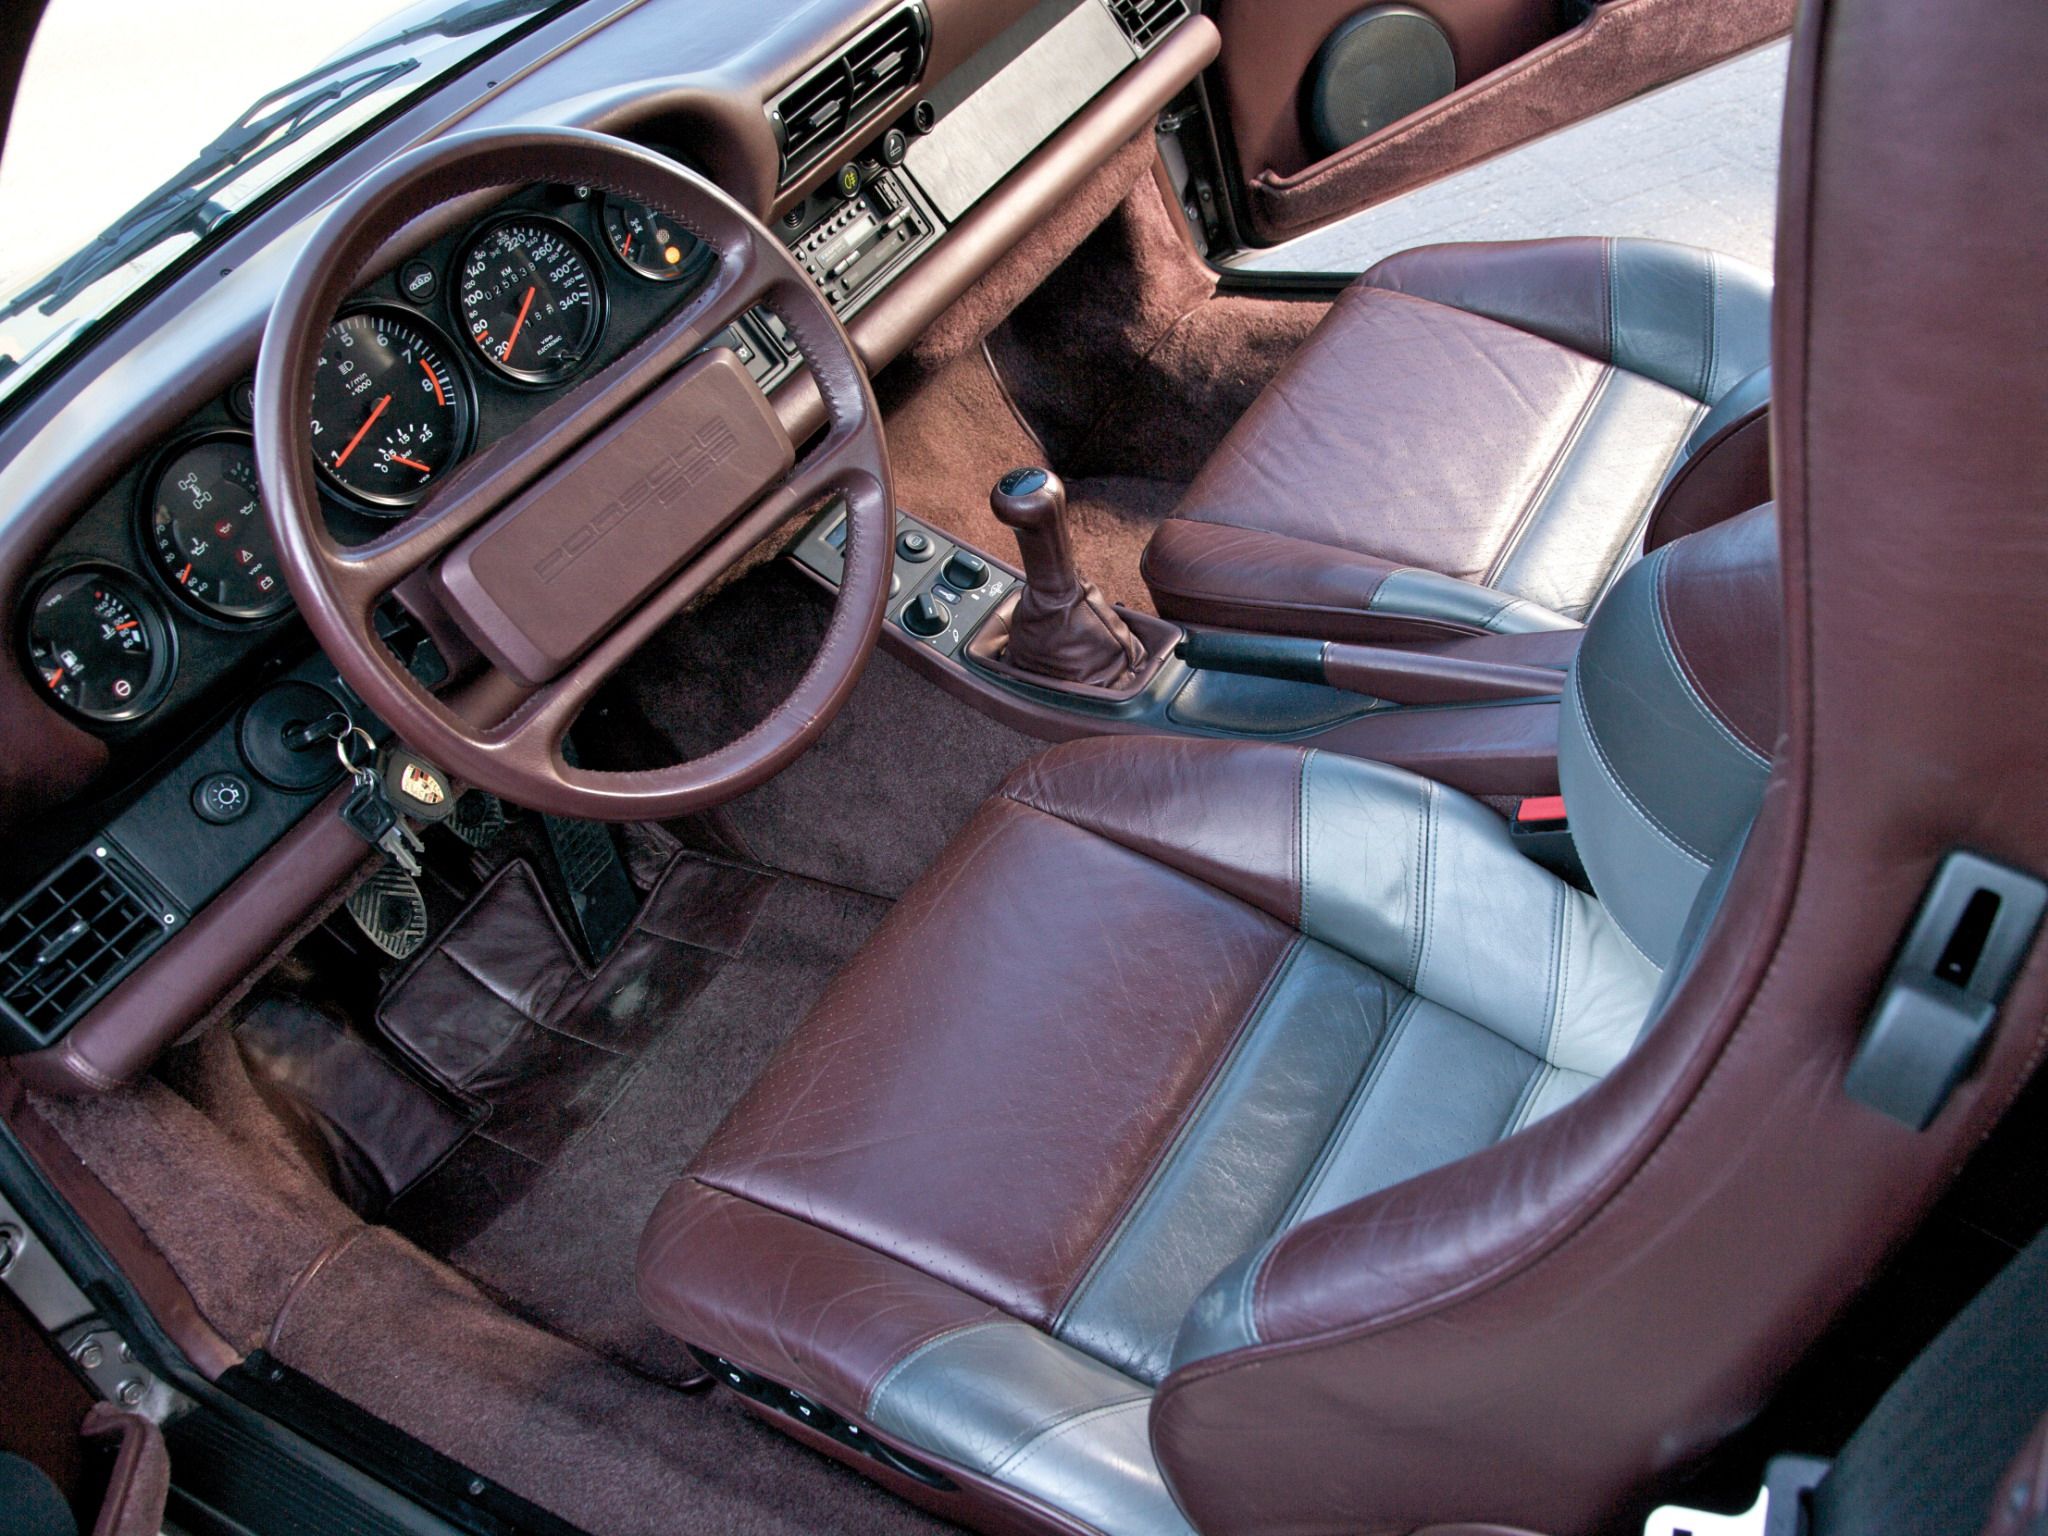 1986 - 1989 Porsche 959